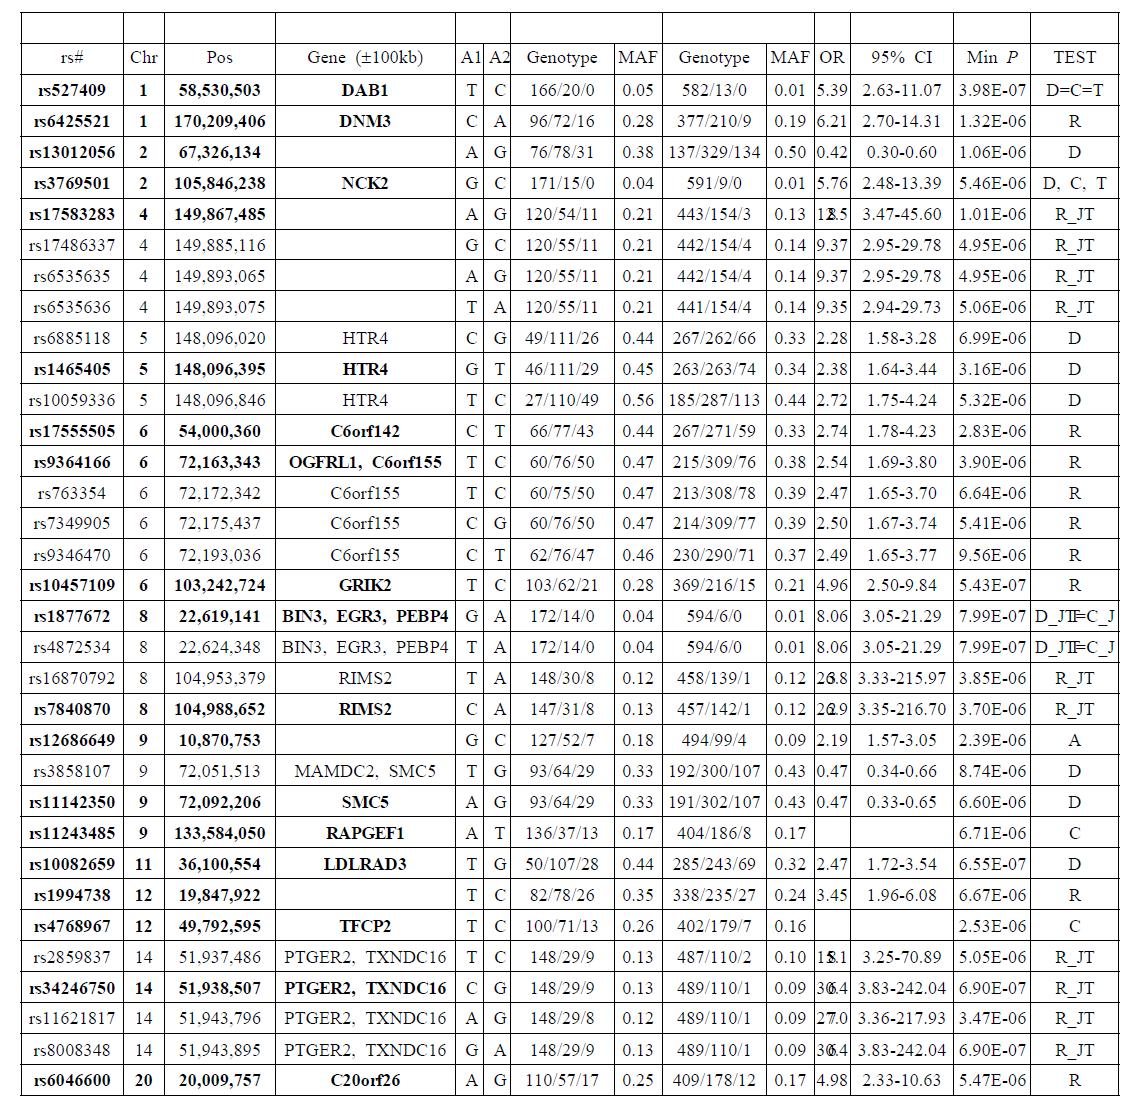 제1차 유전연관성 분석에서 가와사끼병에 유의적(P<1x10E-5)인 33개 SNP 마커들